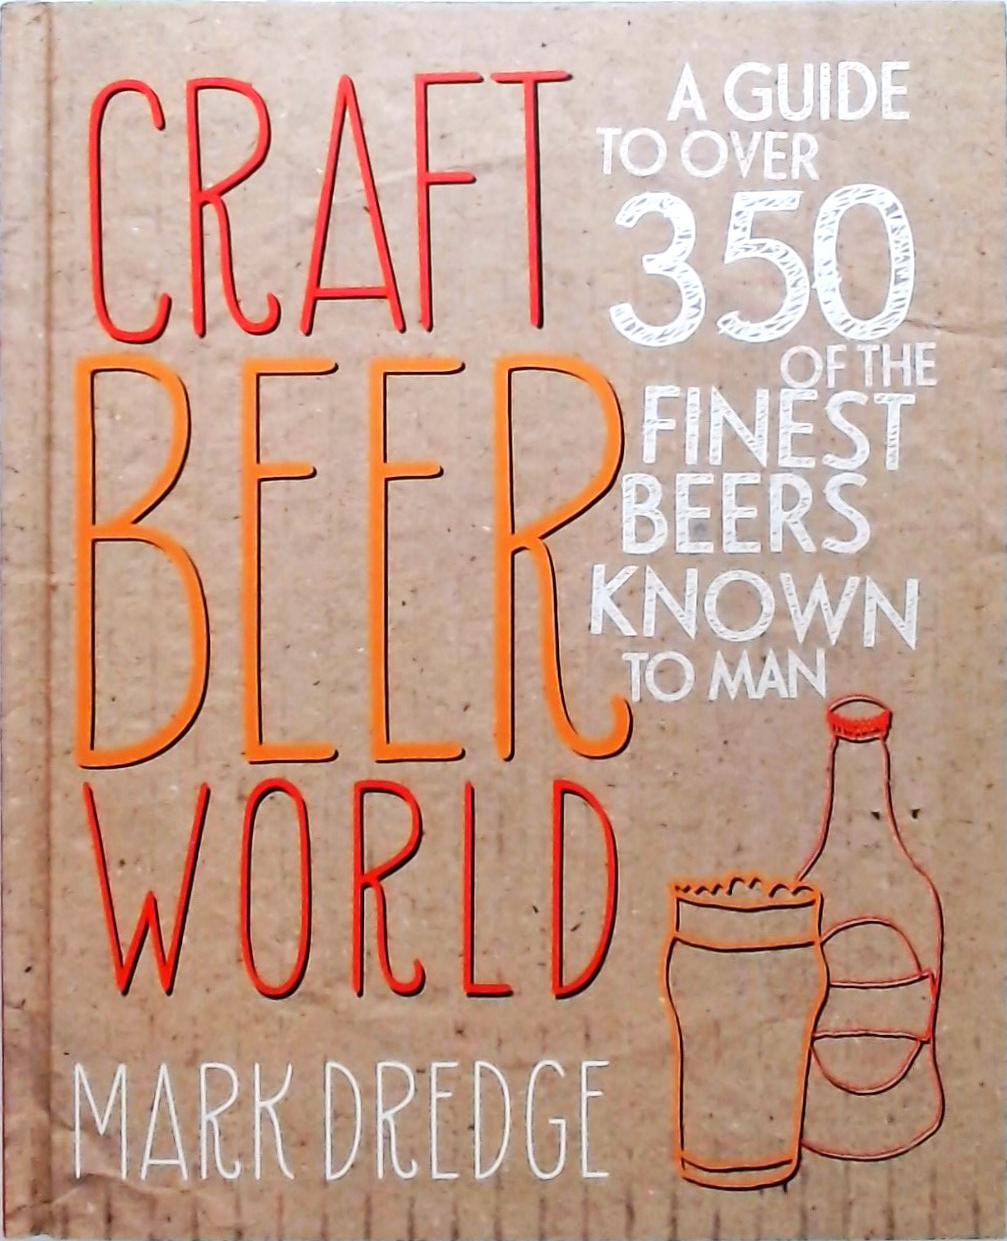 Craft Beer World